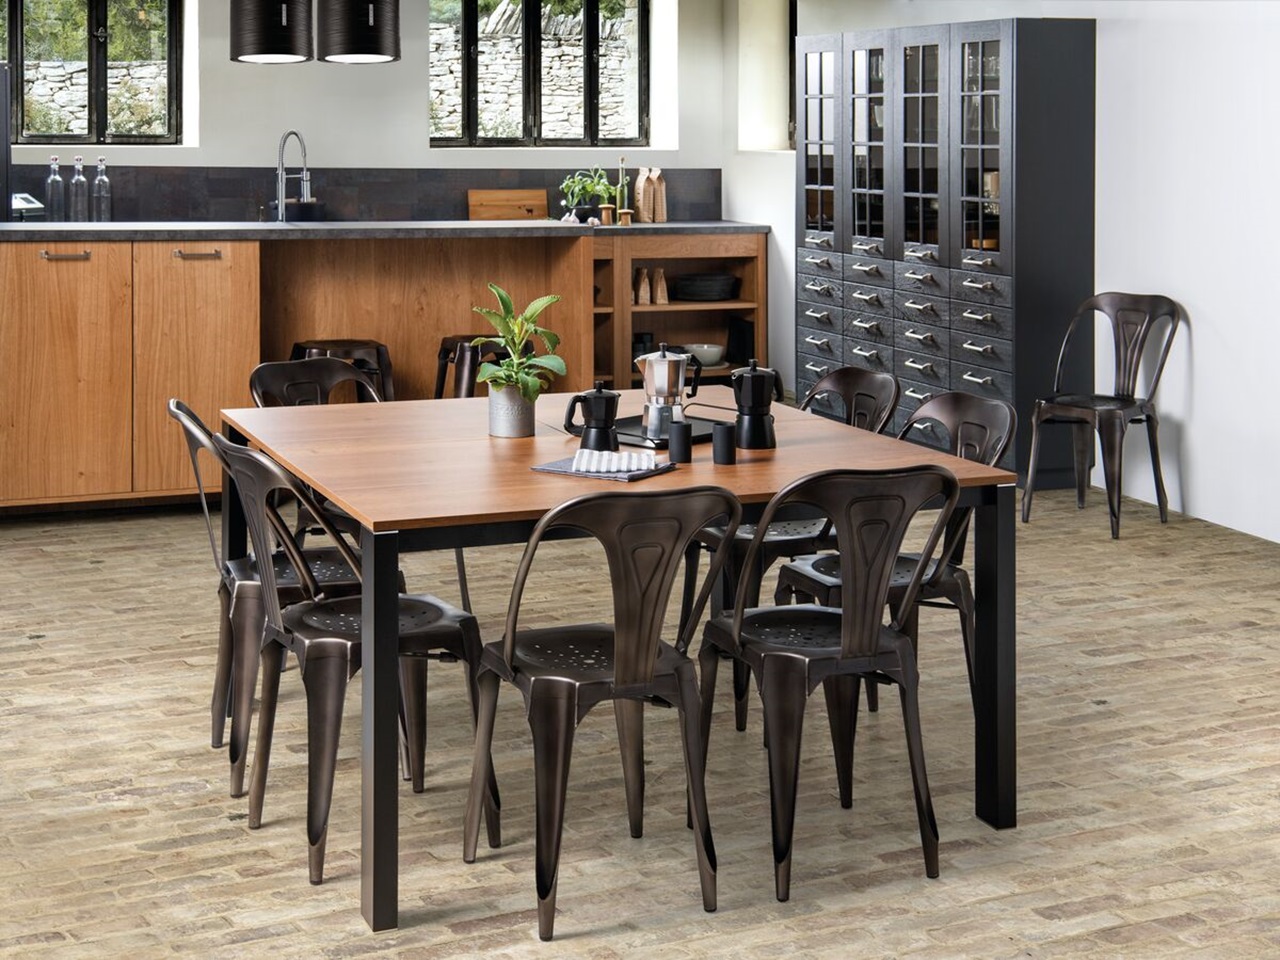 Table et chaises assortis à la teinte bois des meubles de cuisine